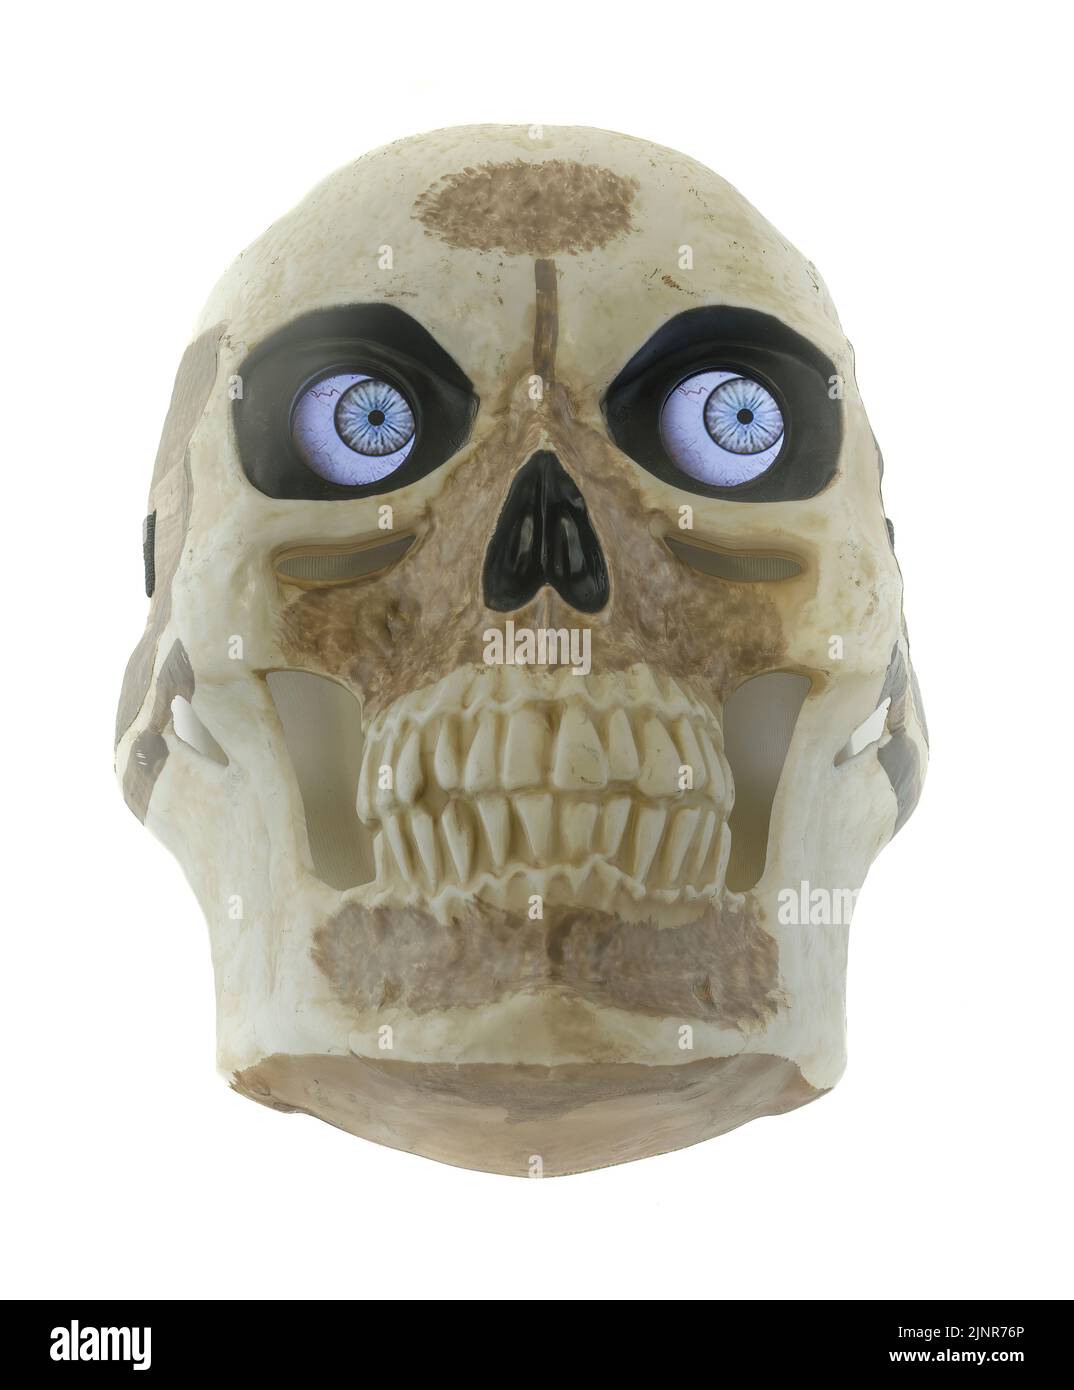 Digit eyes Skull Mask Isolated Against White Background Stock Photo